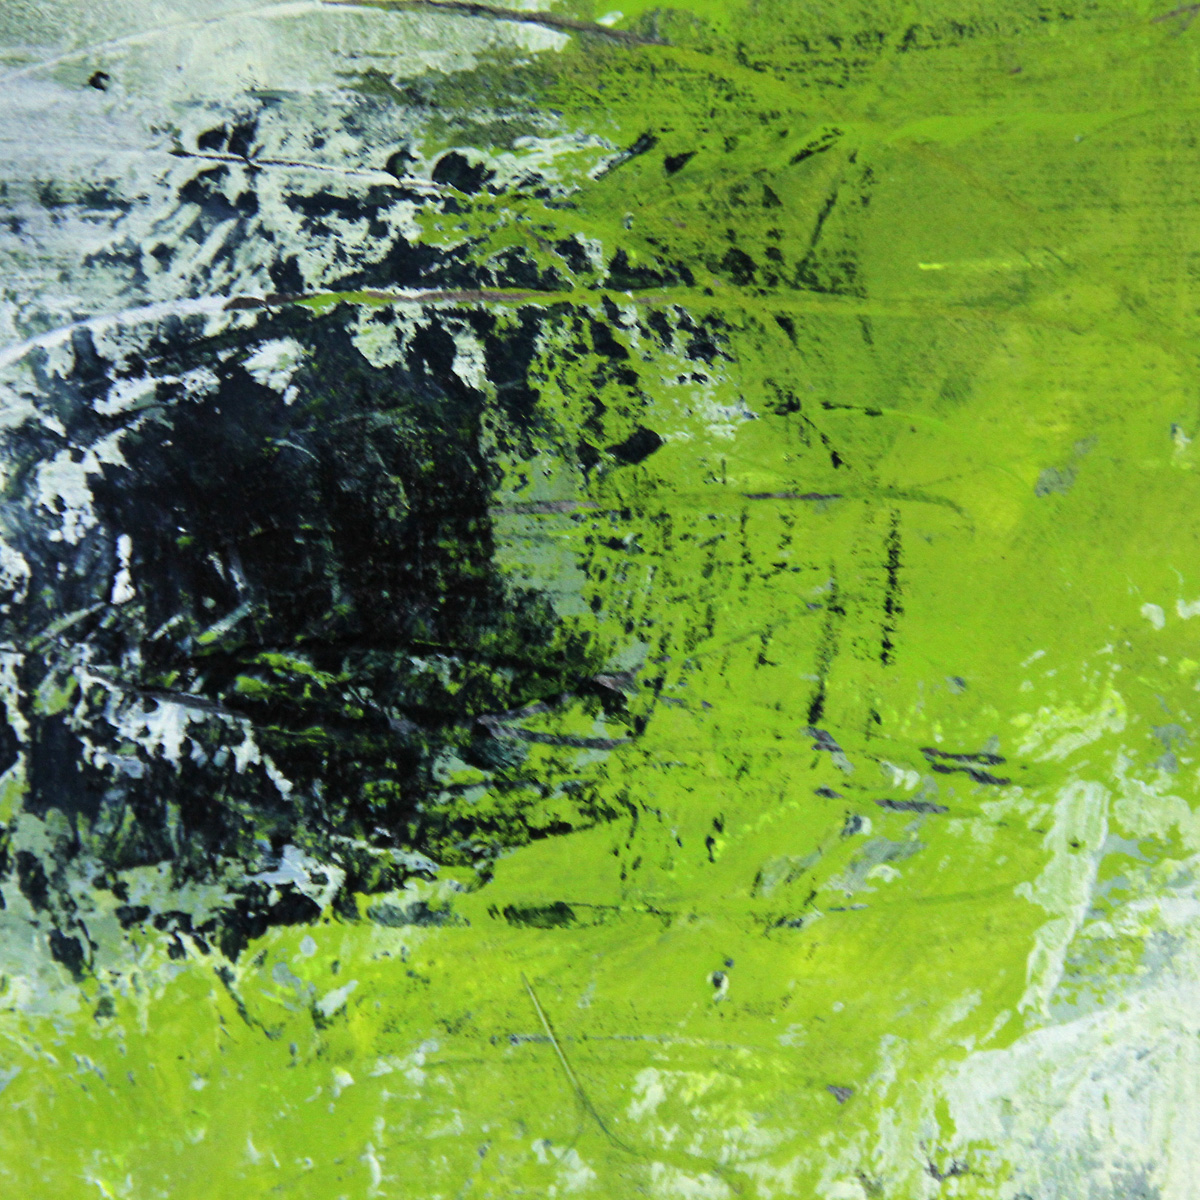 Abstrakte Acrylmalerei, M.Rick: "abstract green" (A)